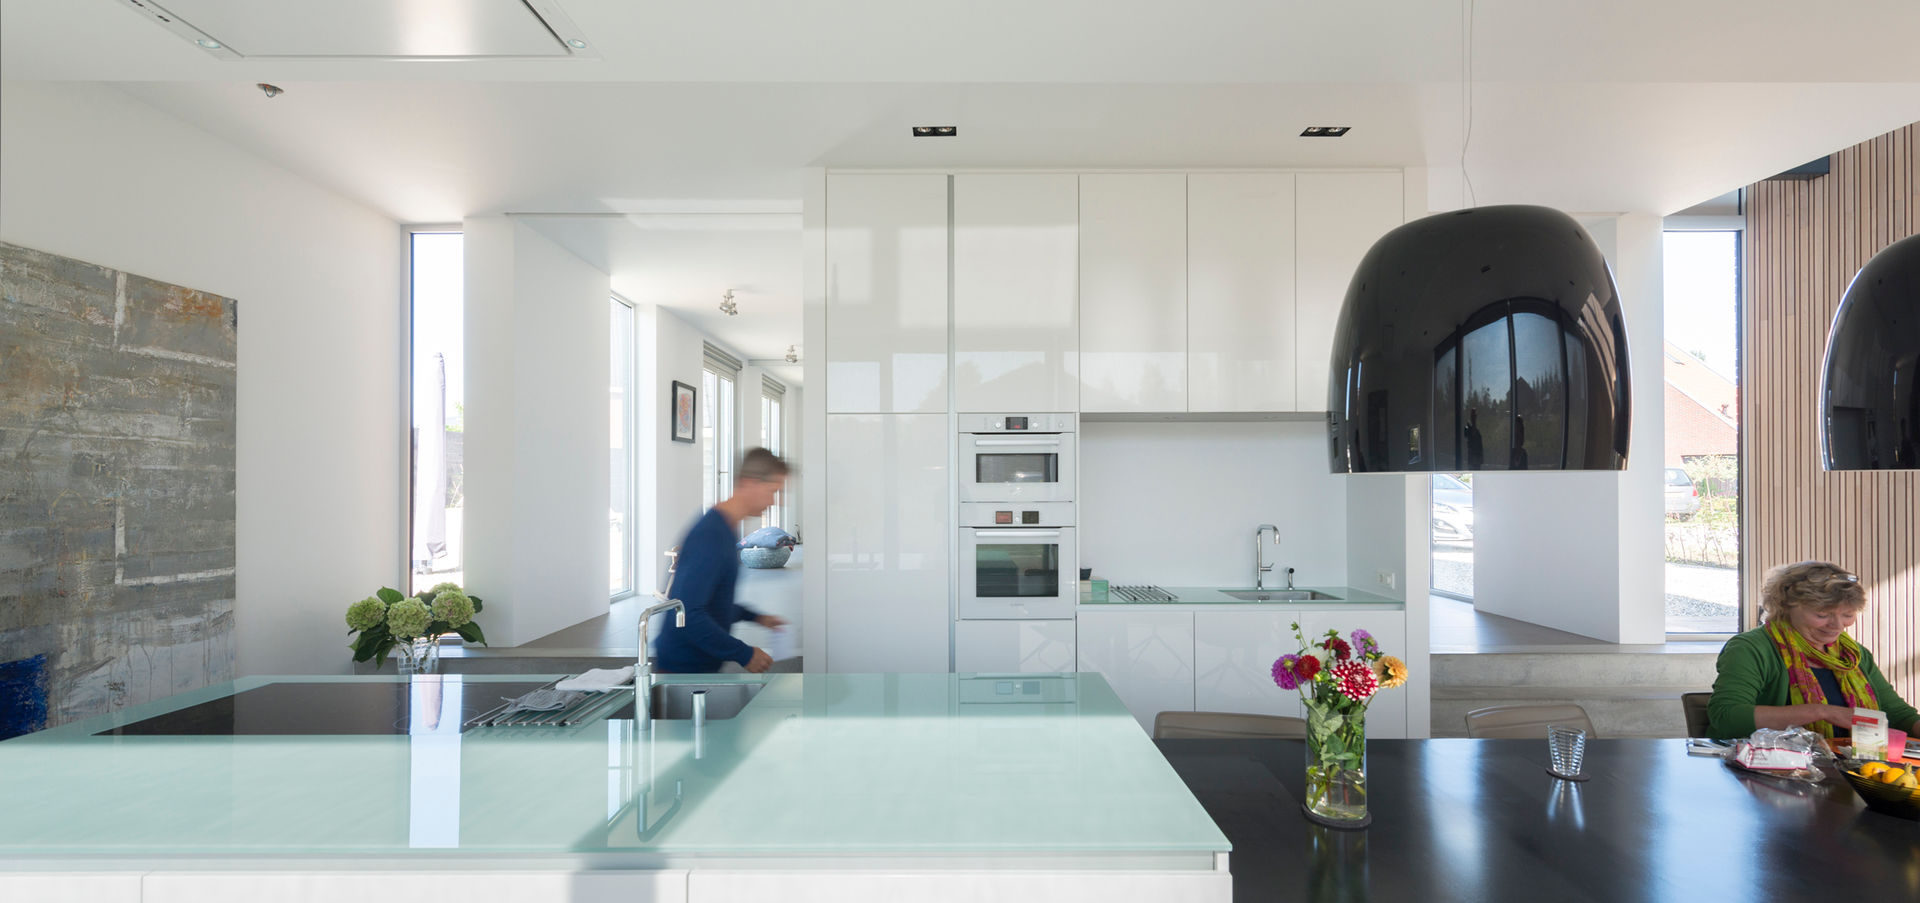 Woonhuis Leidsche Rijn, Architect2GO Architect2GO Minimalist kitchen